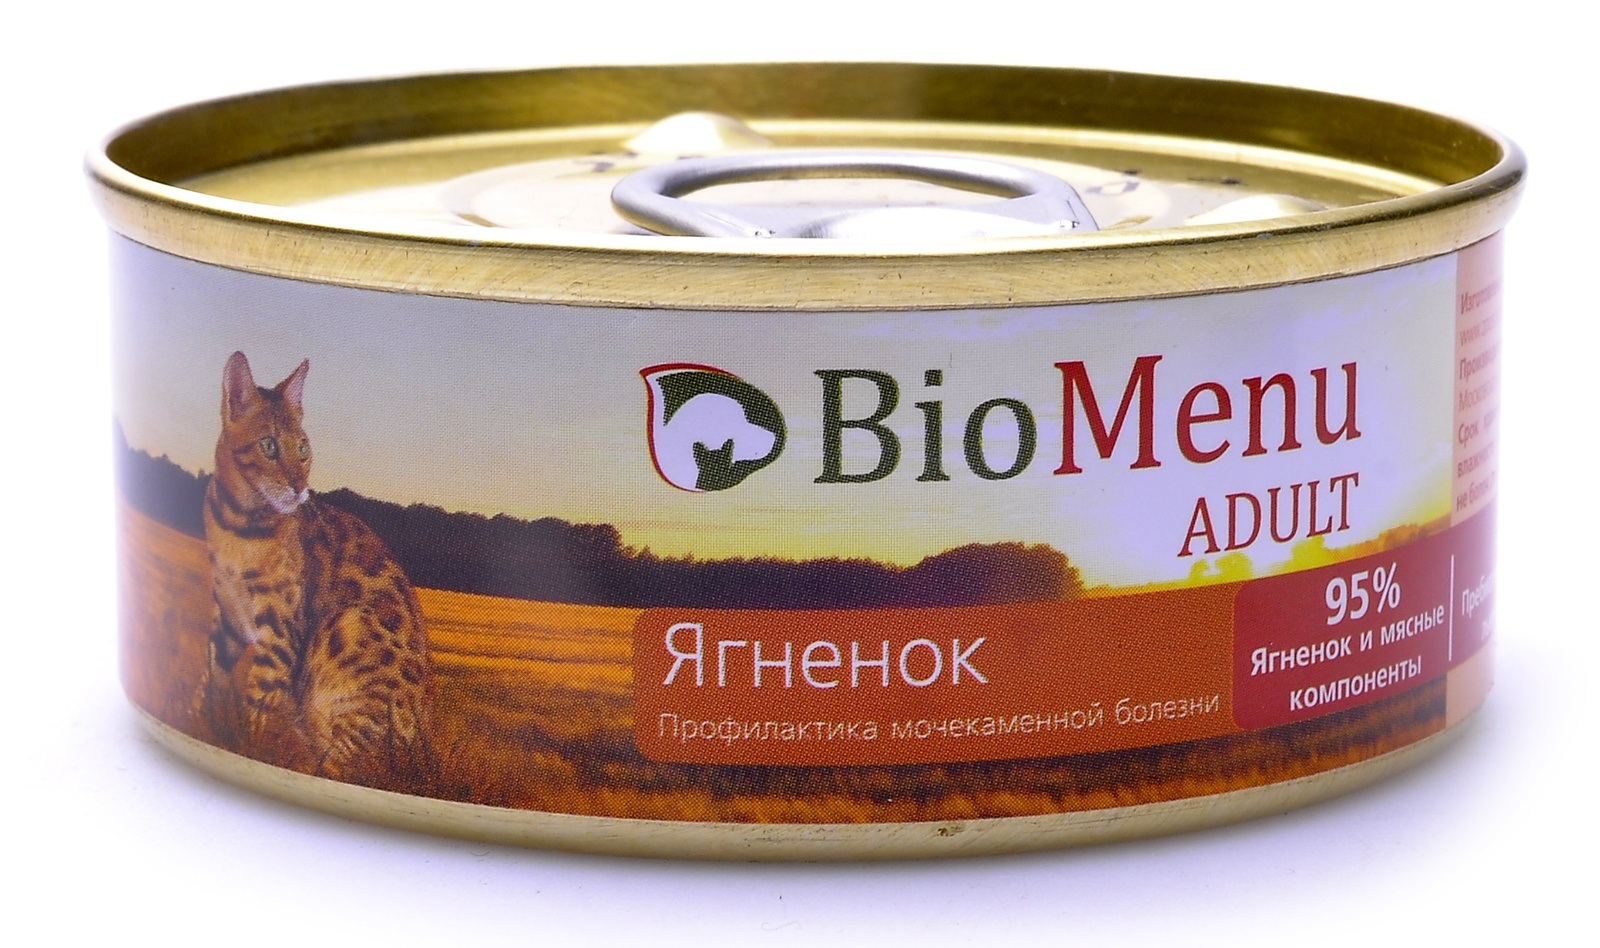 BioMenu BioMenu паштет для кошек с ягненком (100 г) консервы biomenu adult для кошек мясной паштет с кроликом 95% мясо 100 г